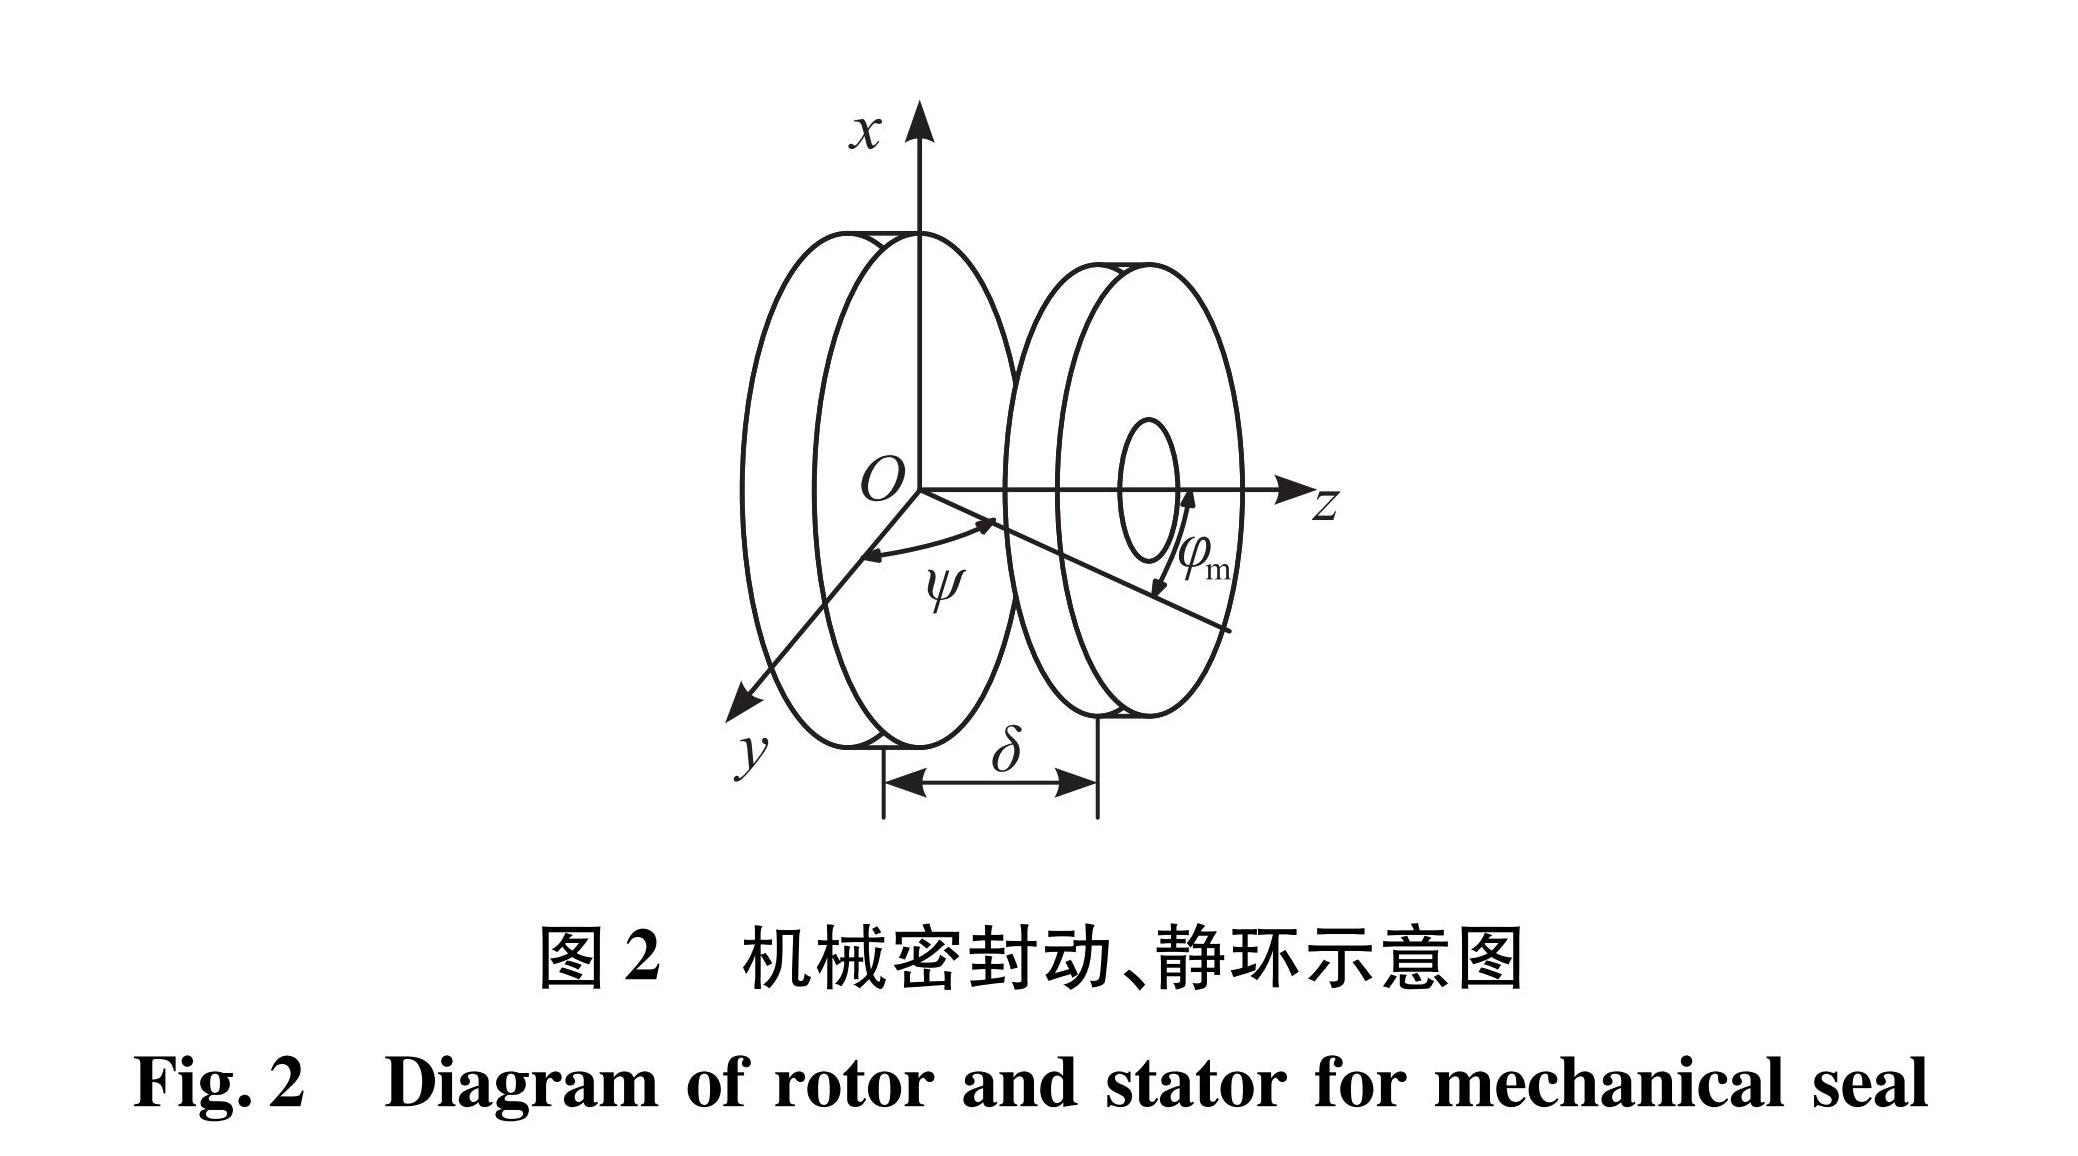 图2 机械密封动、静环示意图<br/>Fig.2 Diagram of rotor and stator for mechanical seal